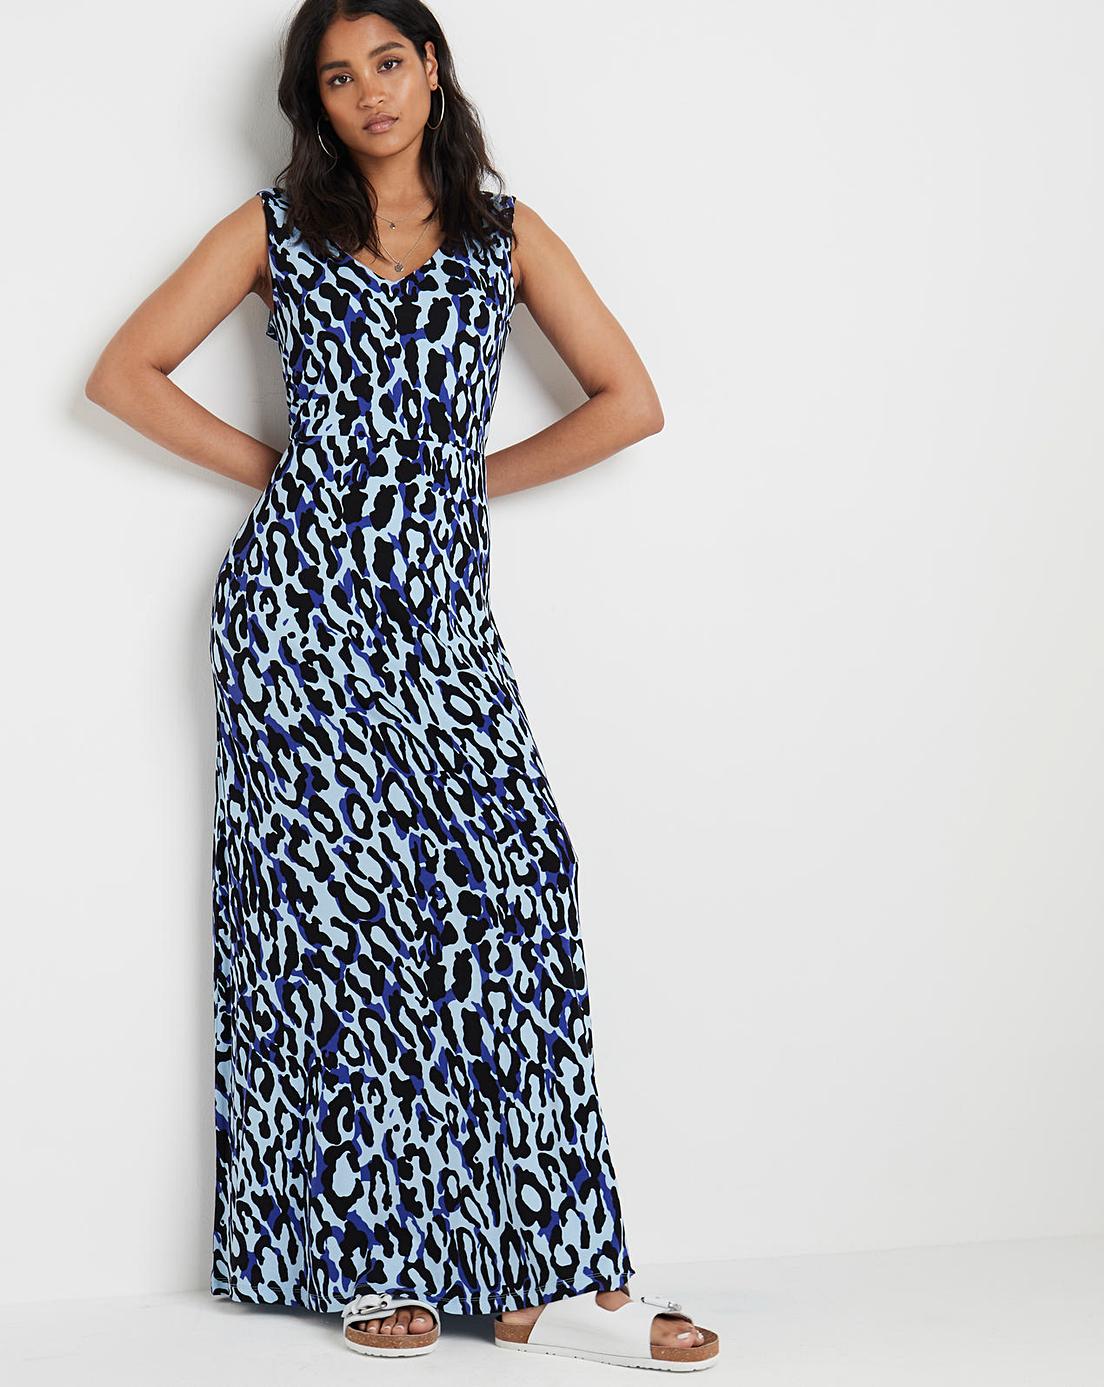 Joe Brown Leopard Print Dress | Marisota